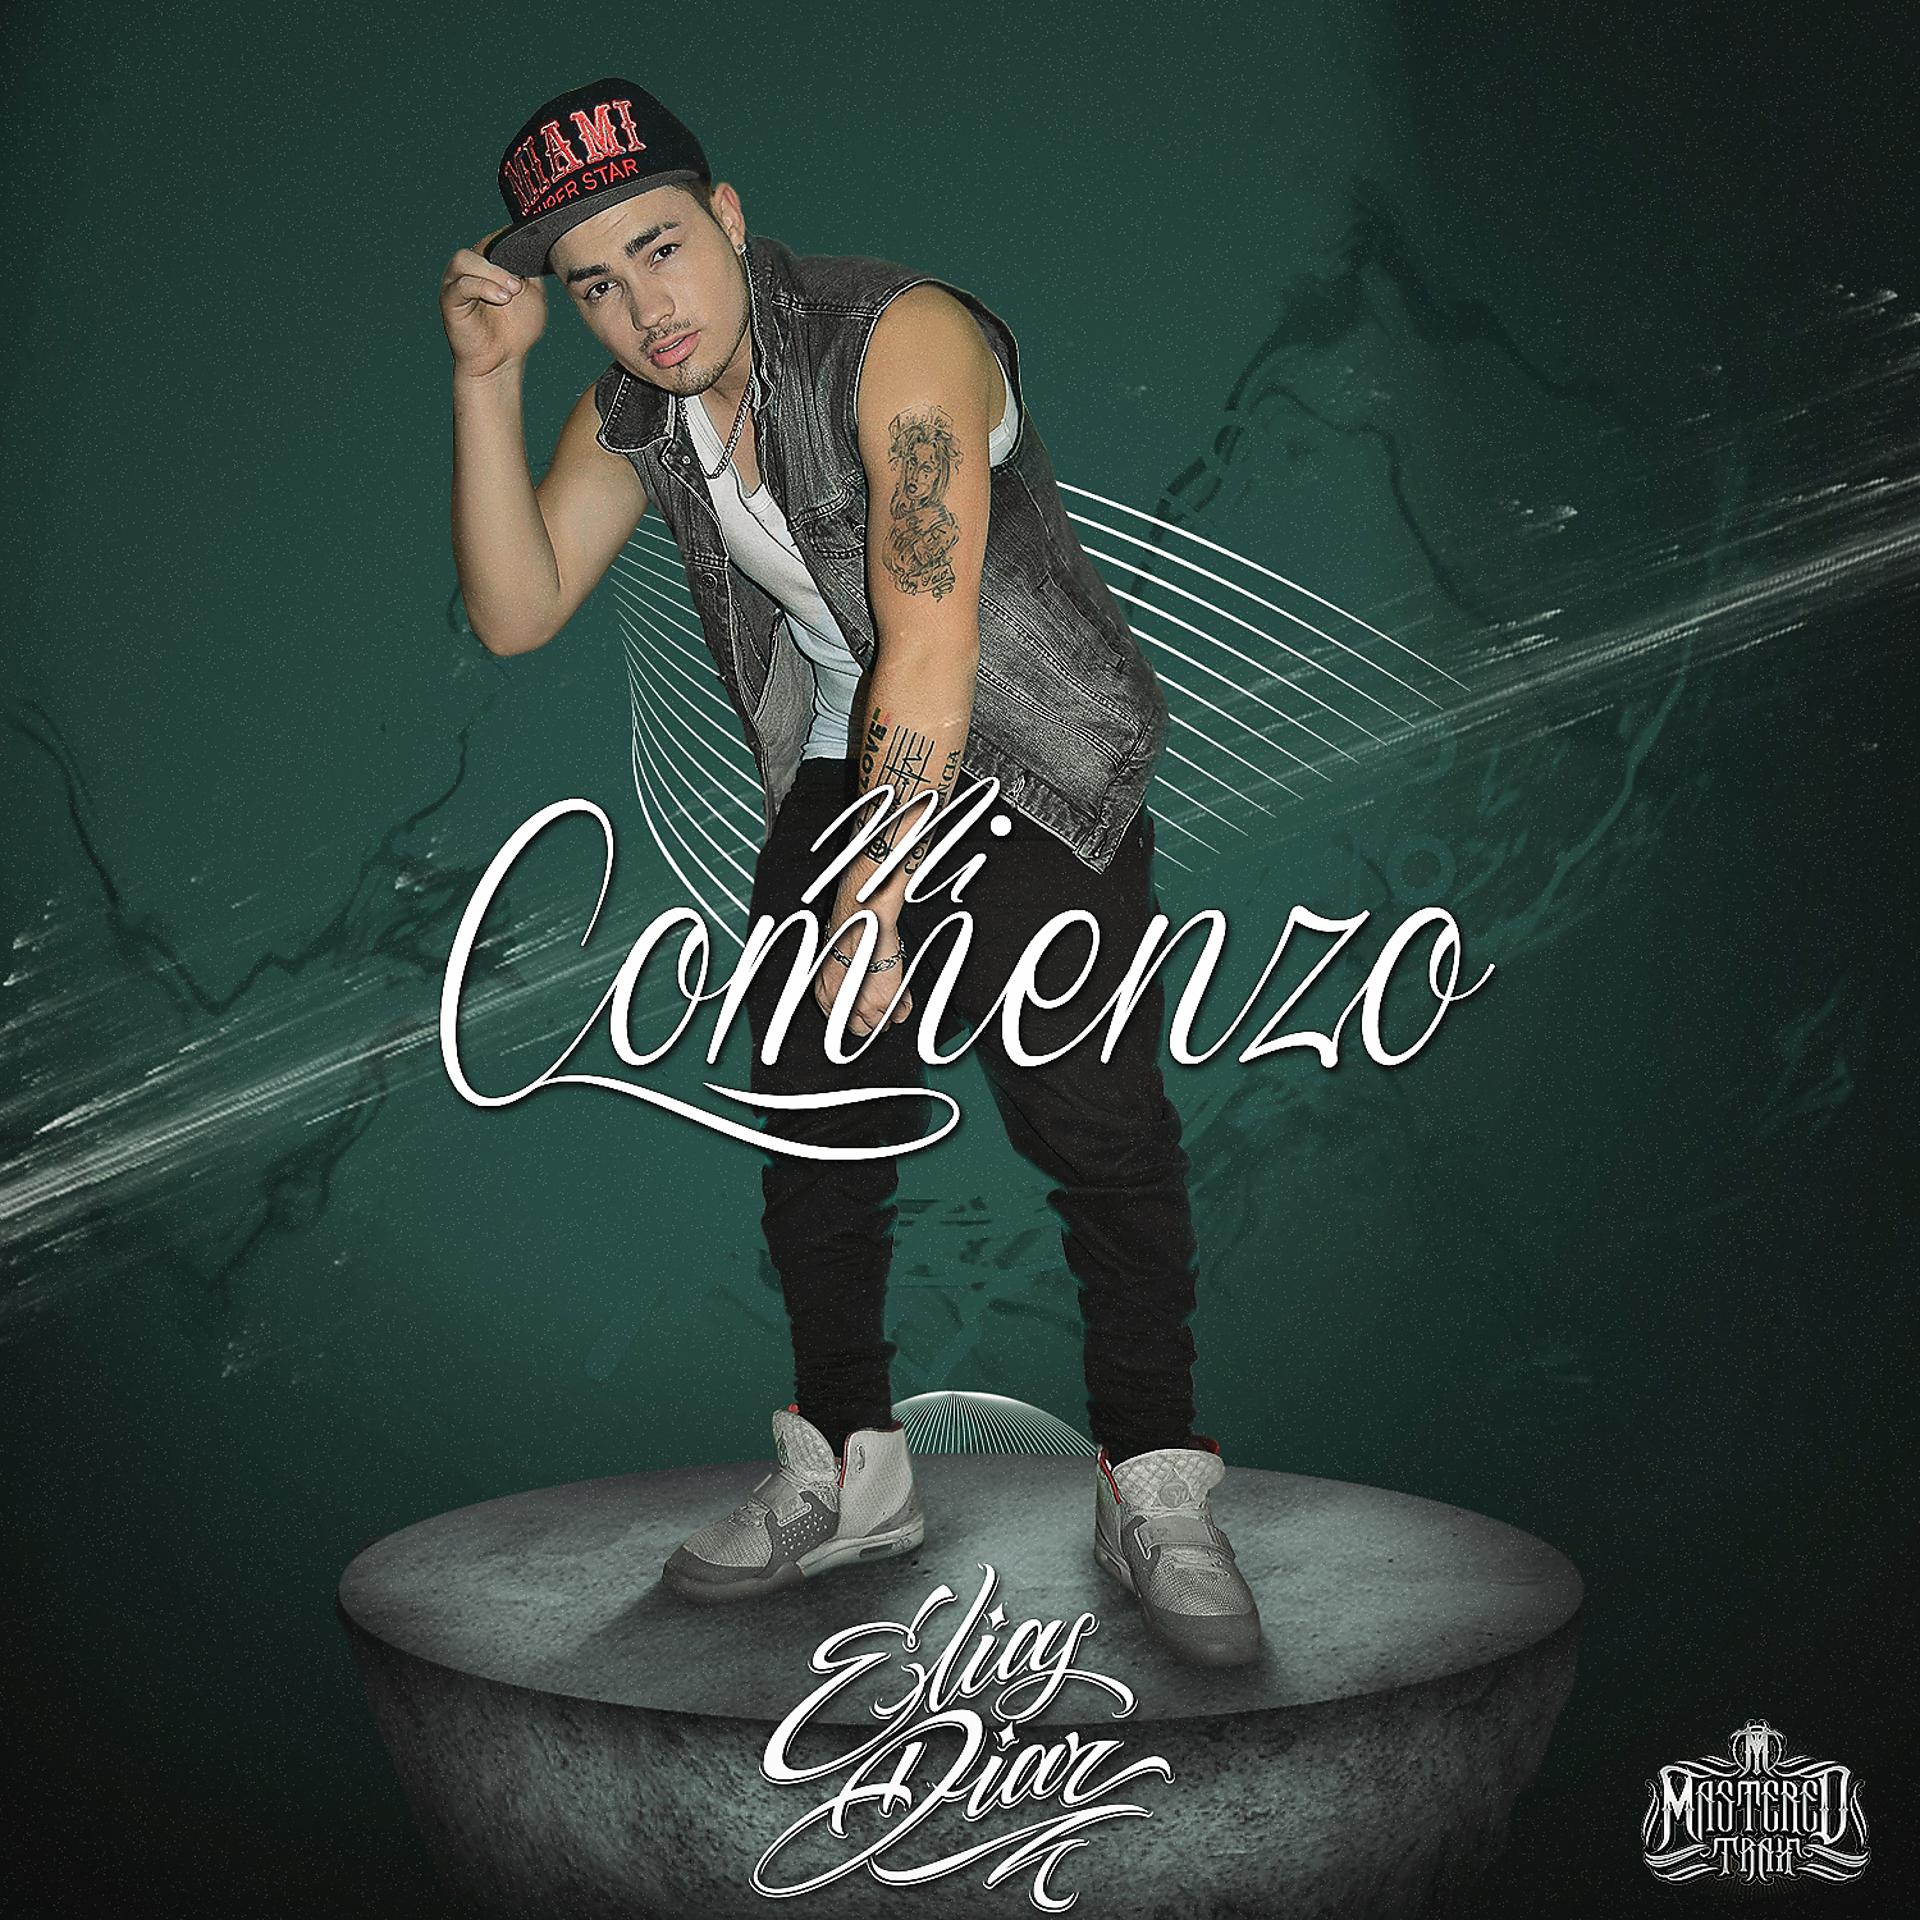 Постер альбома Mi Comienzo